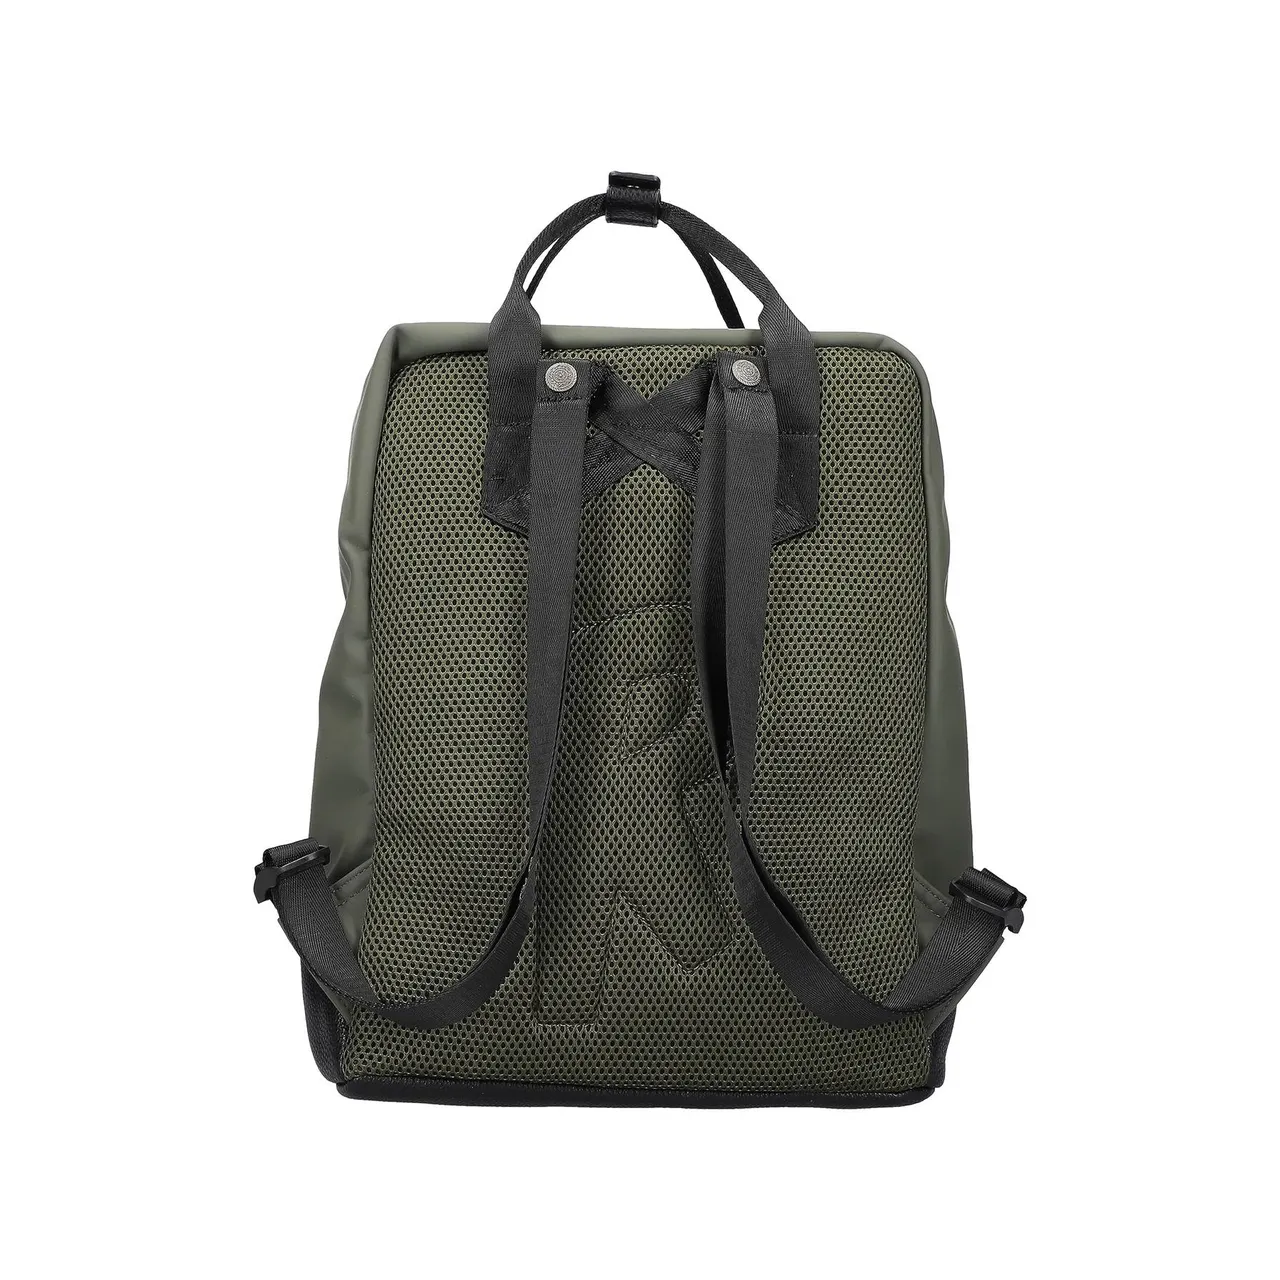 Handtaschen grün 38